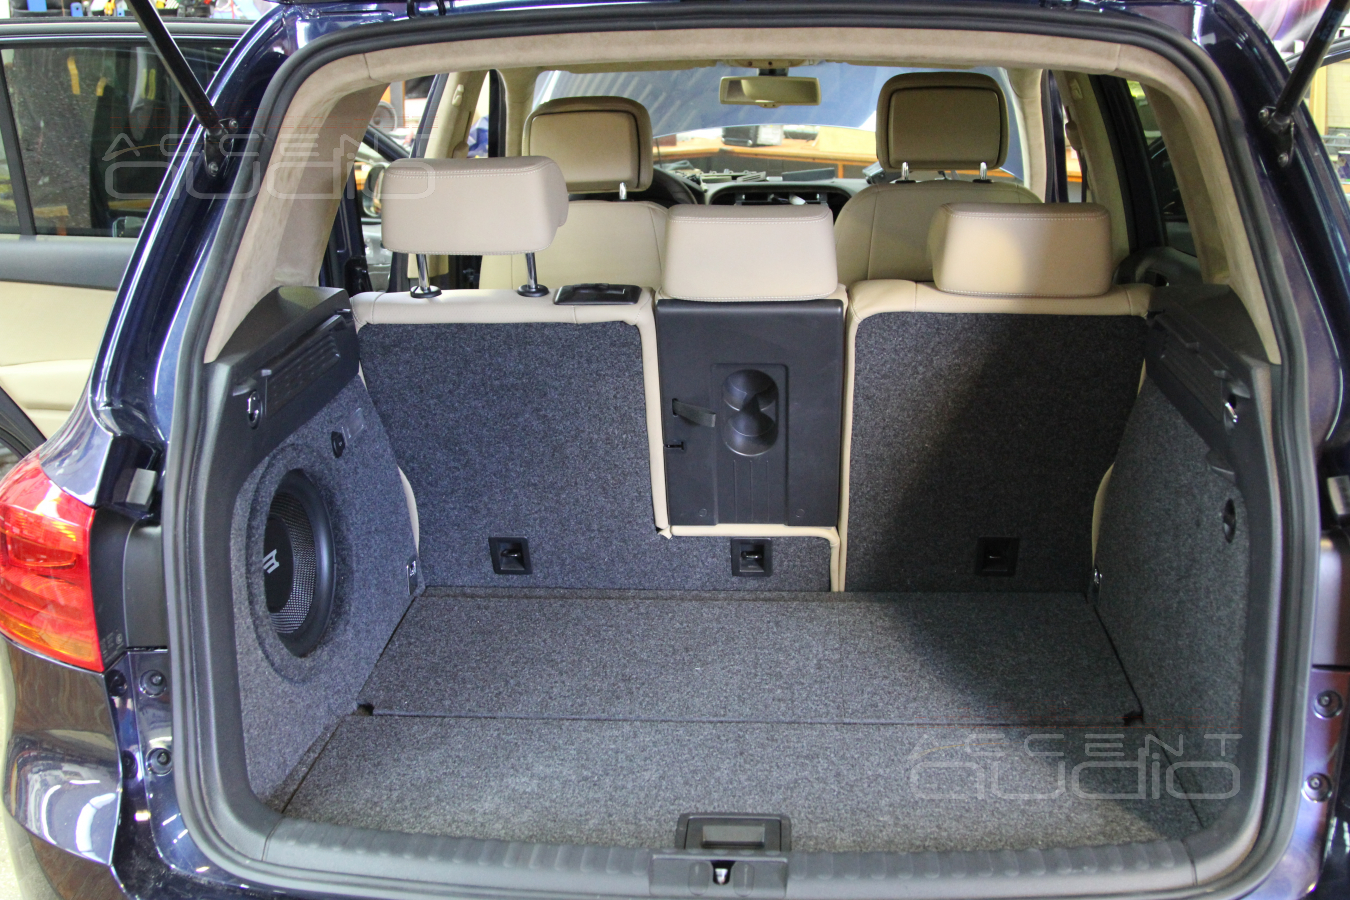 Alpine ICS-X7 в Volkswagen Tiguan 2013